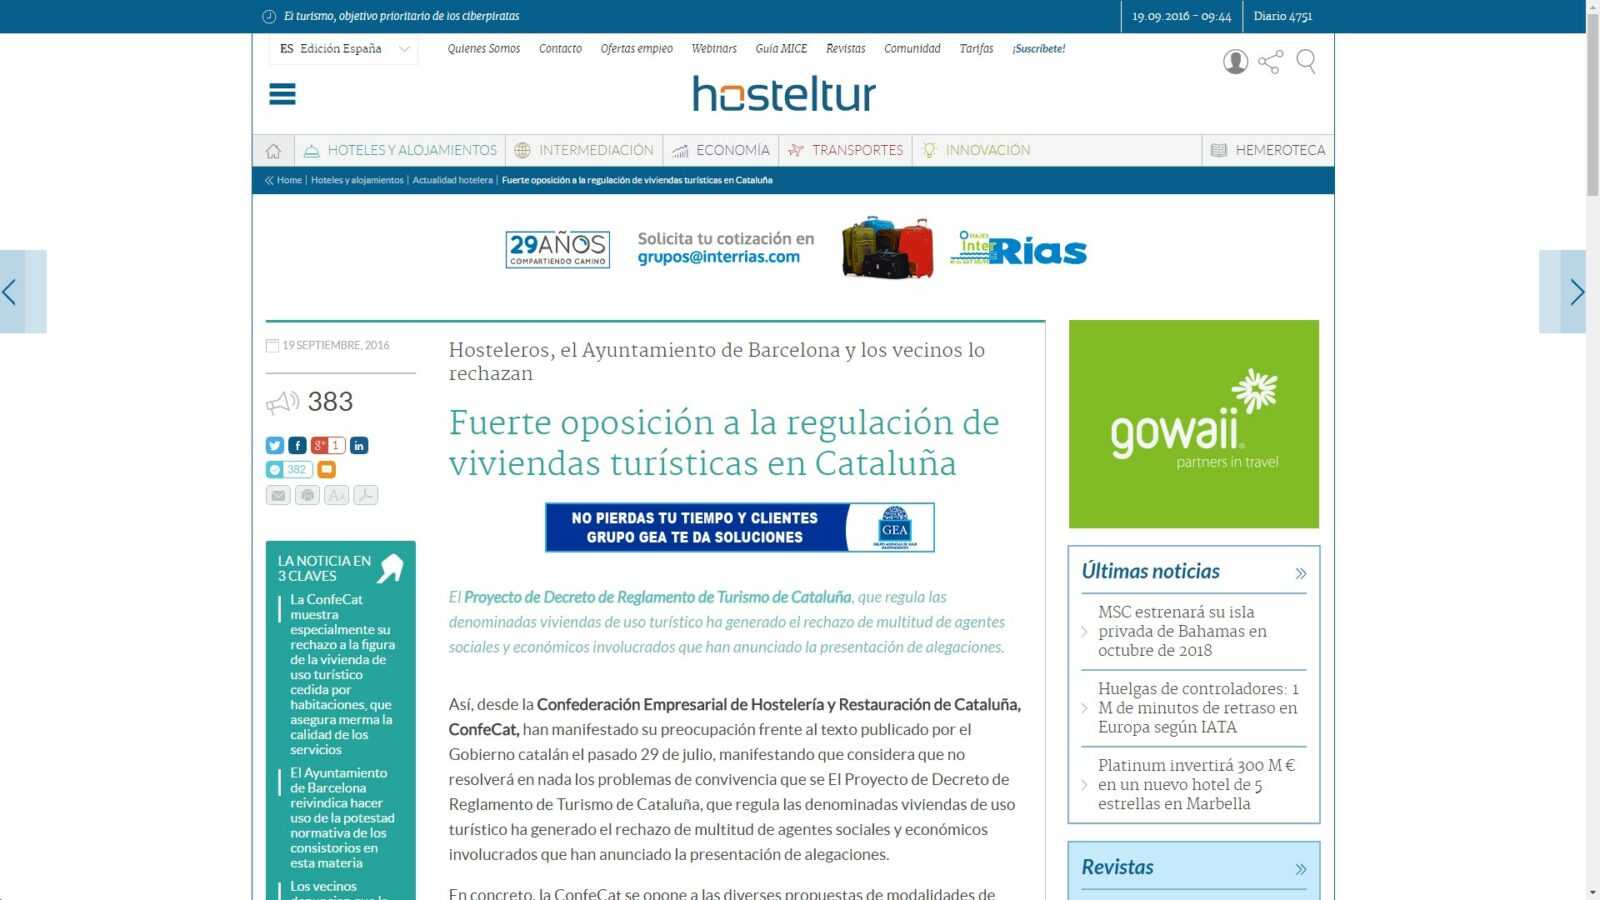 fuerte-oposicion-a-la-regulacion-de-viviendas-turisticas-en-cataluna-hoteles-y-alojamientos-google-chrome